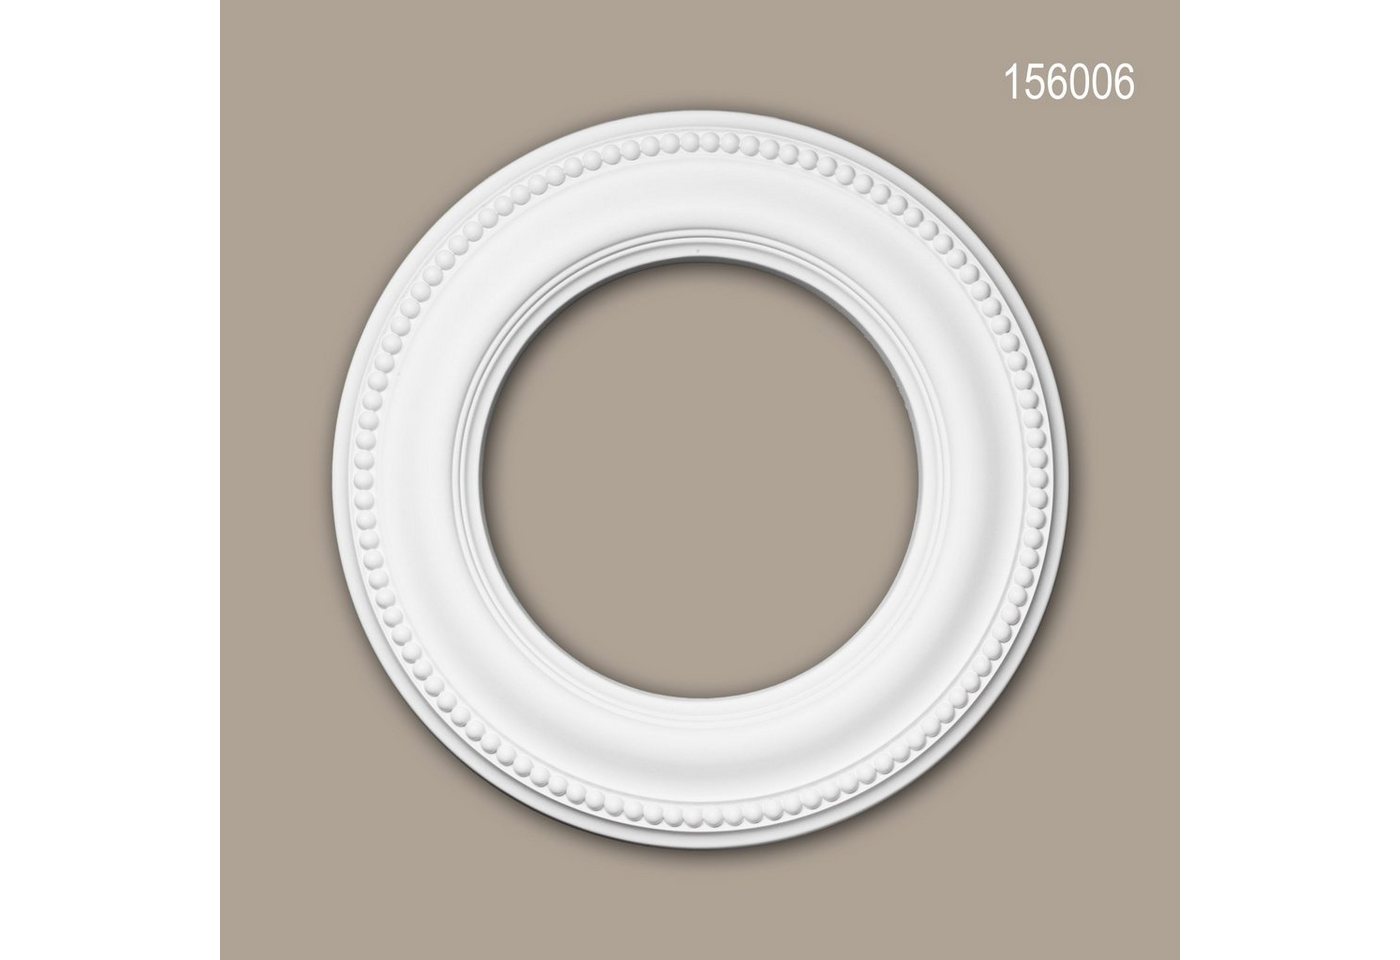 Profhome Decken-Rosette 156006 (Rosette, 1 St., Deckenrosette, Medallion, Stuckrosette, Deckenelement, Zierelement, Durchmesser 33 cm), weiß, vorgrundiert, Stil: Neo-Klassizismus von Profhome